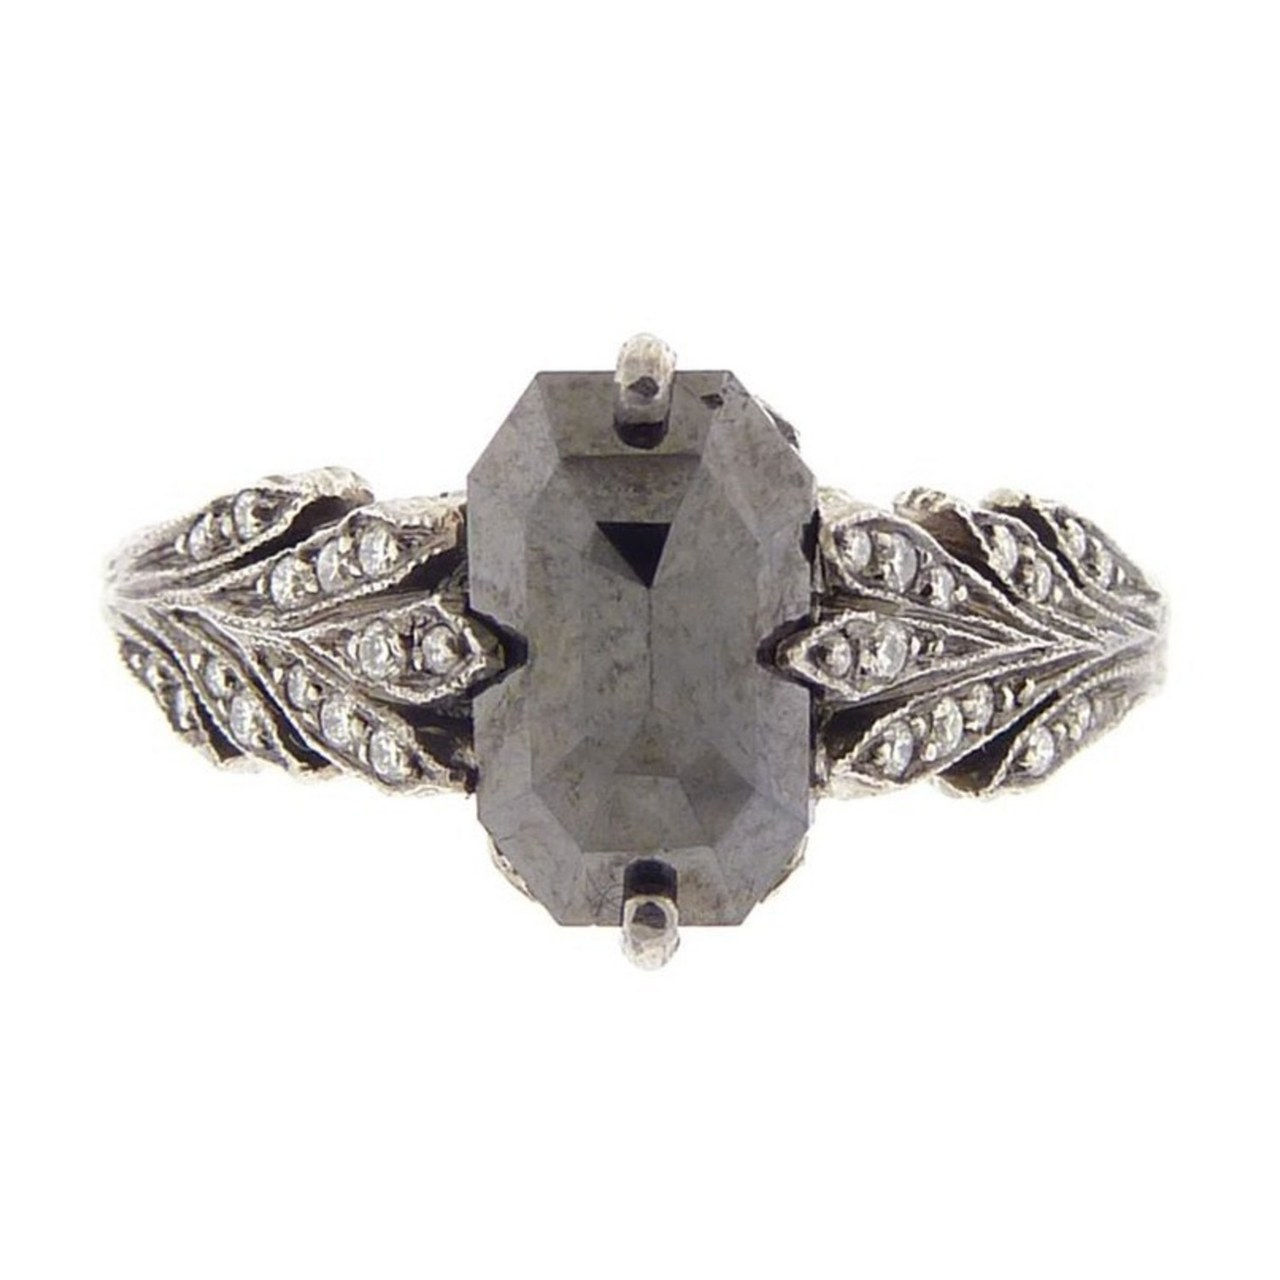 3 engagement rings inspired by kat von d black diamond skull 1218